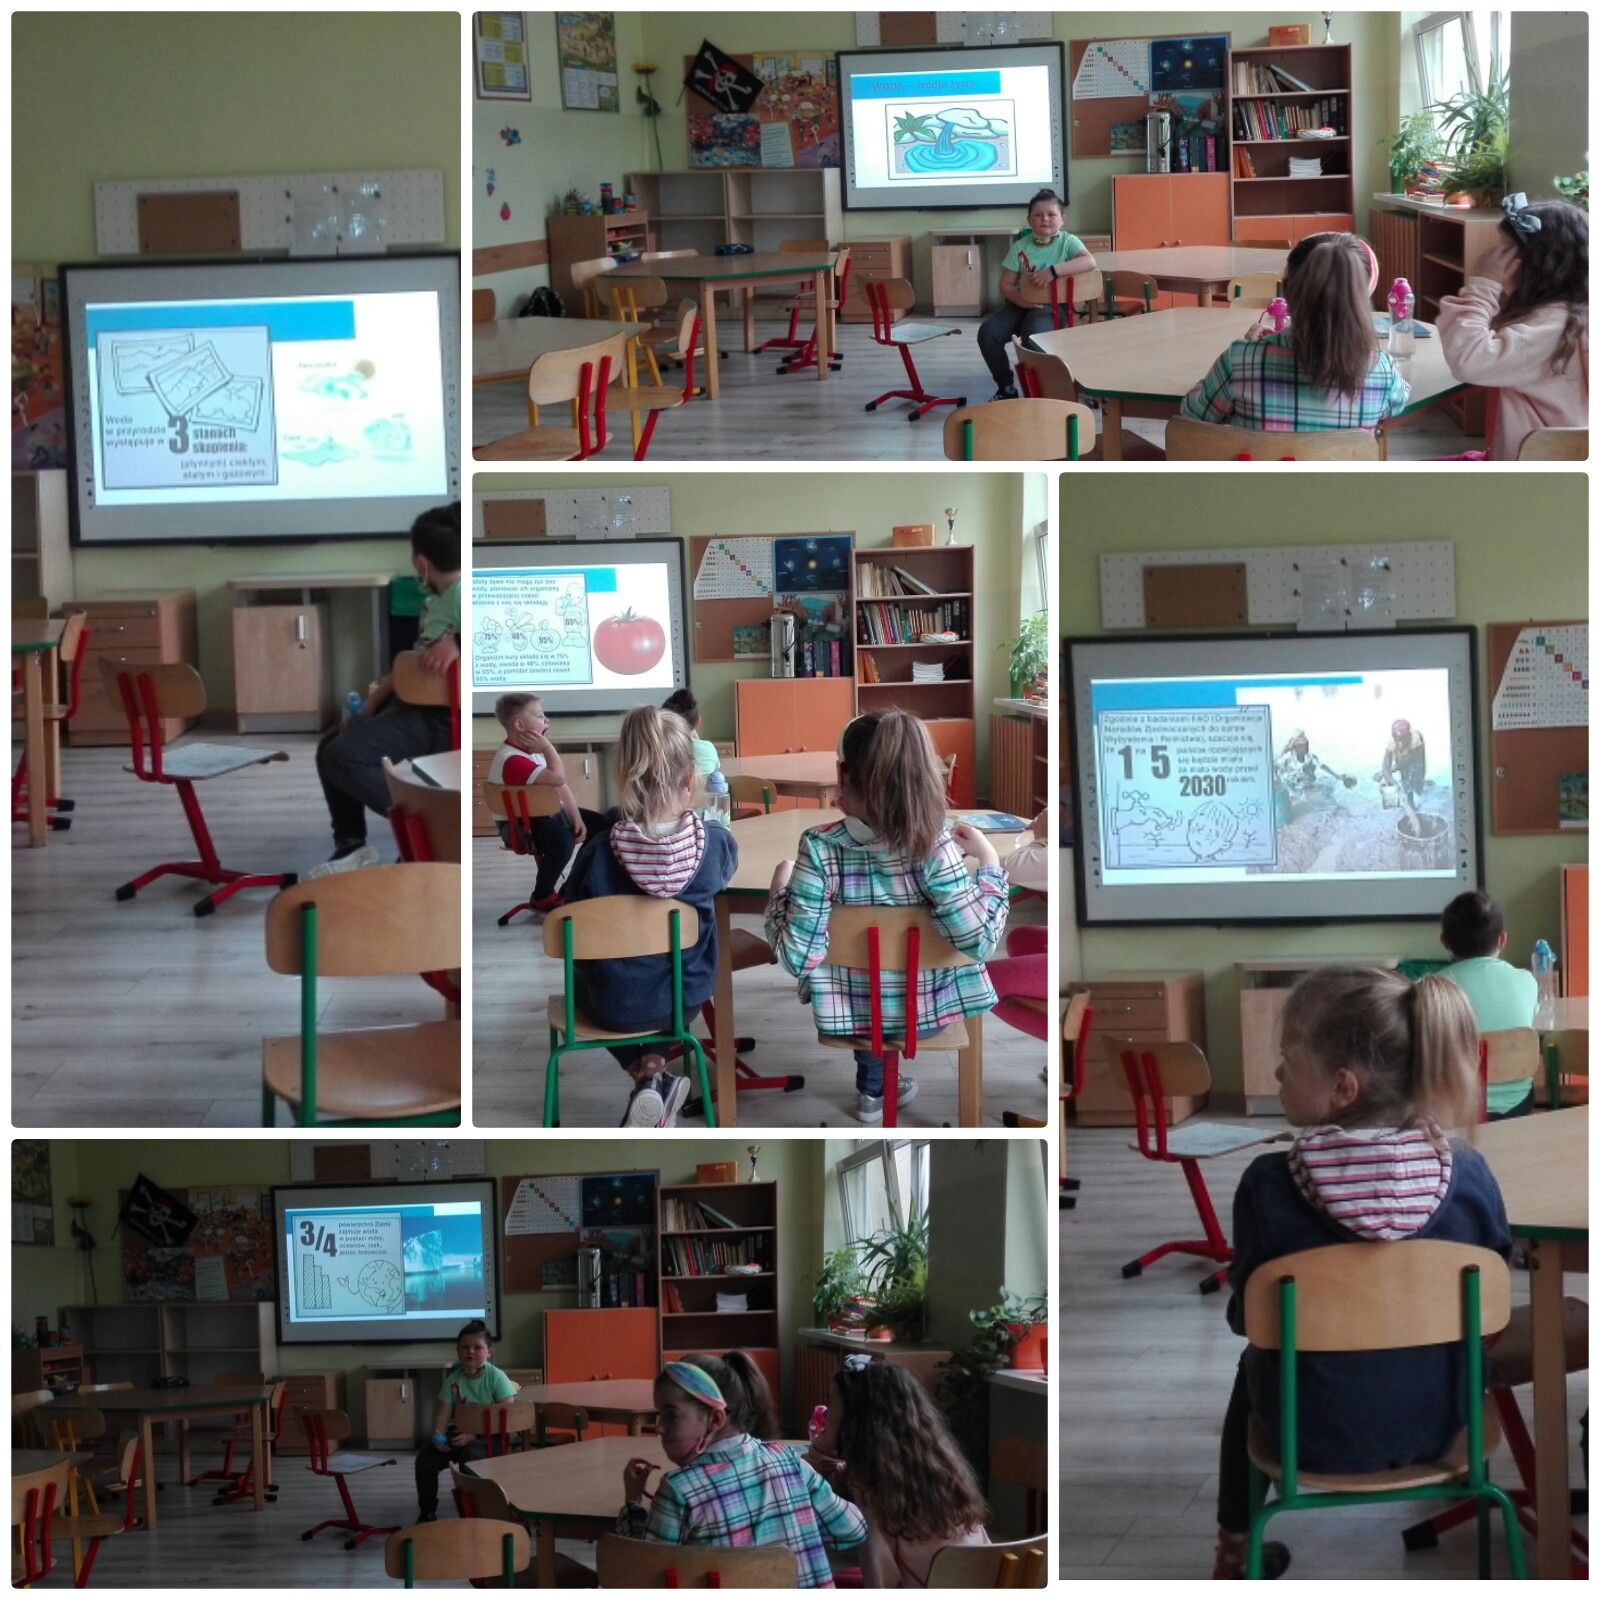 uczniowie w klasie oglądają prezentację na tablicy multimedialnej